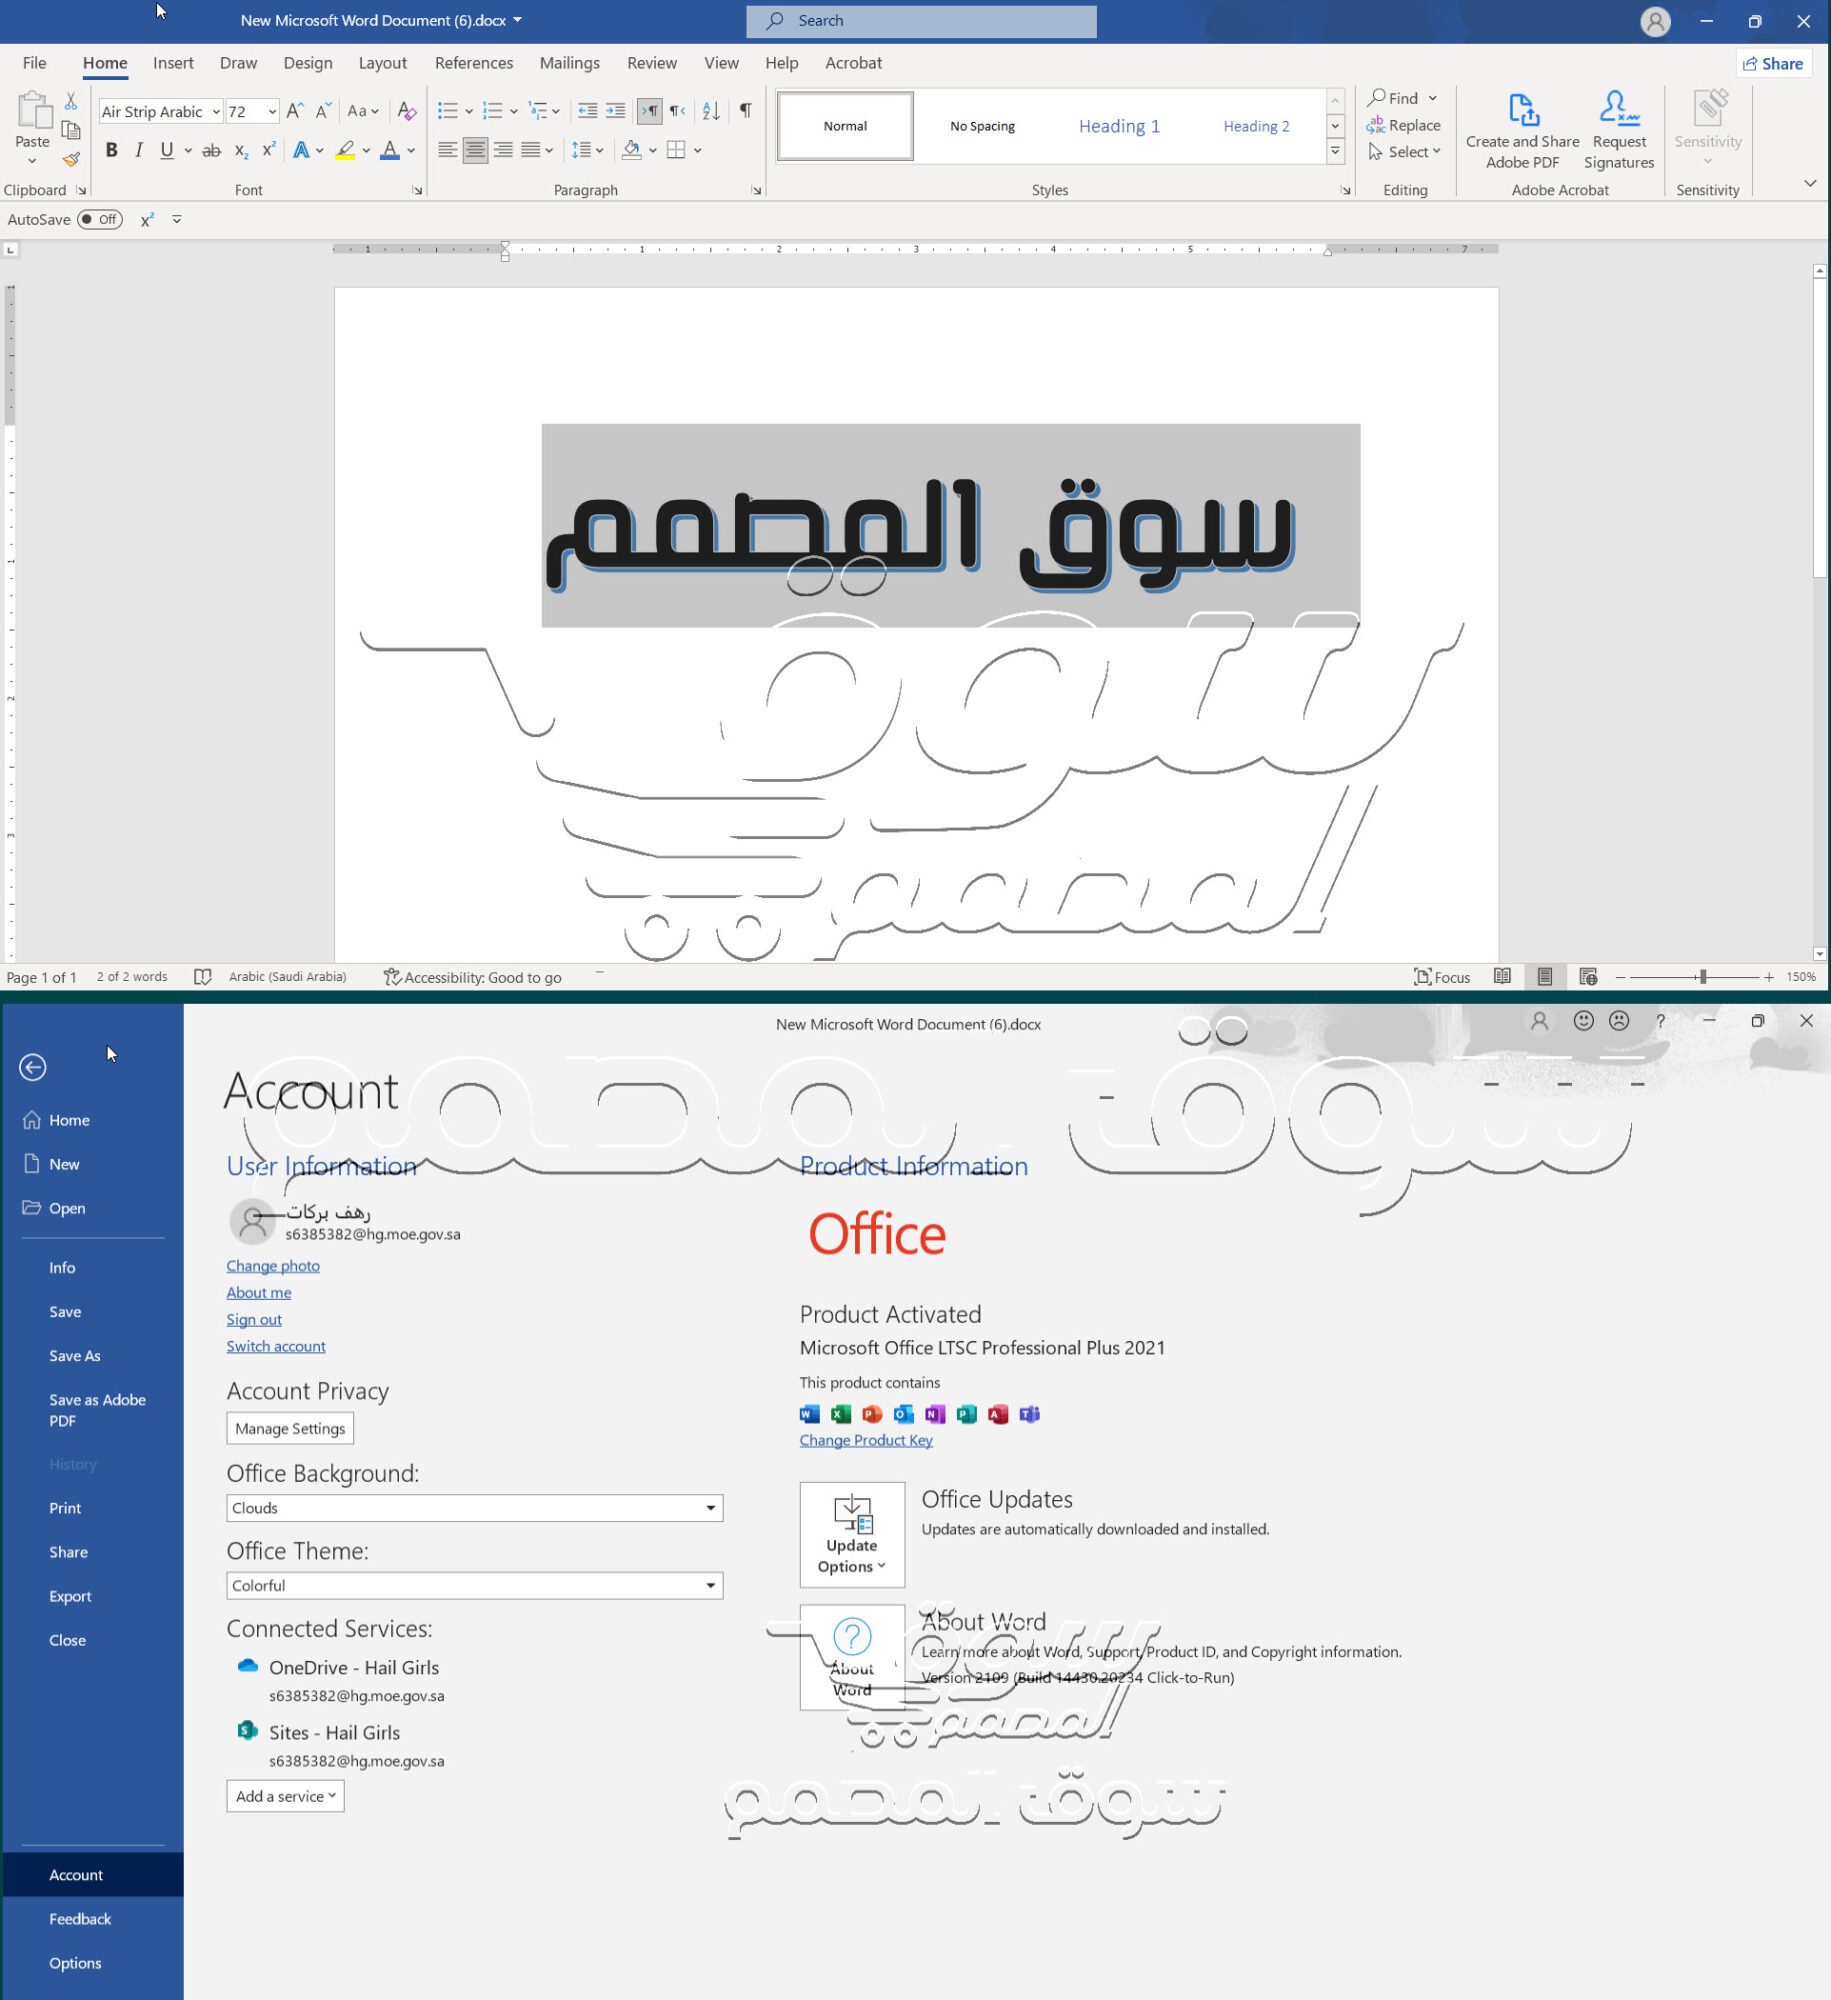 اصدار جديد للاوفيس 2021 كامل مع جميع التحديثات النسخة الرسمية Microsoft Office Professional Plus 2021 Retail Version 2108 Build 14326.20454 (x86-x64) Multilingual